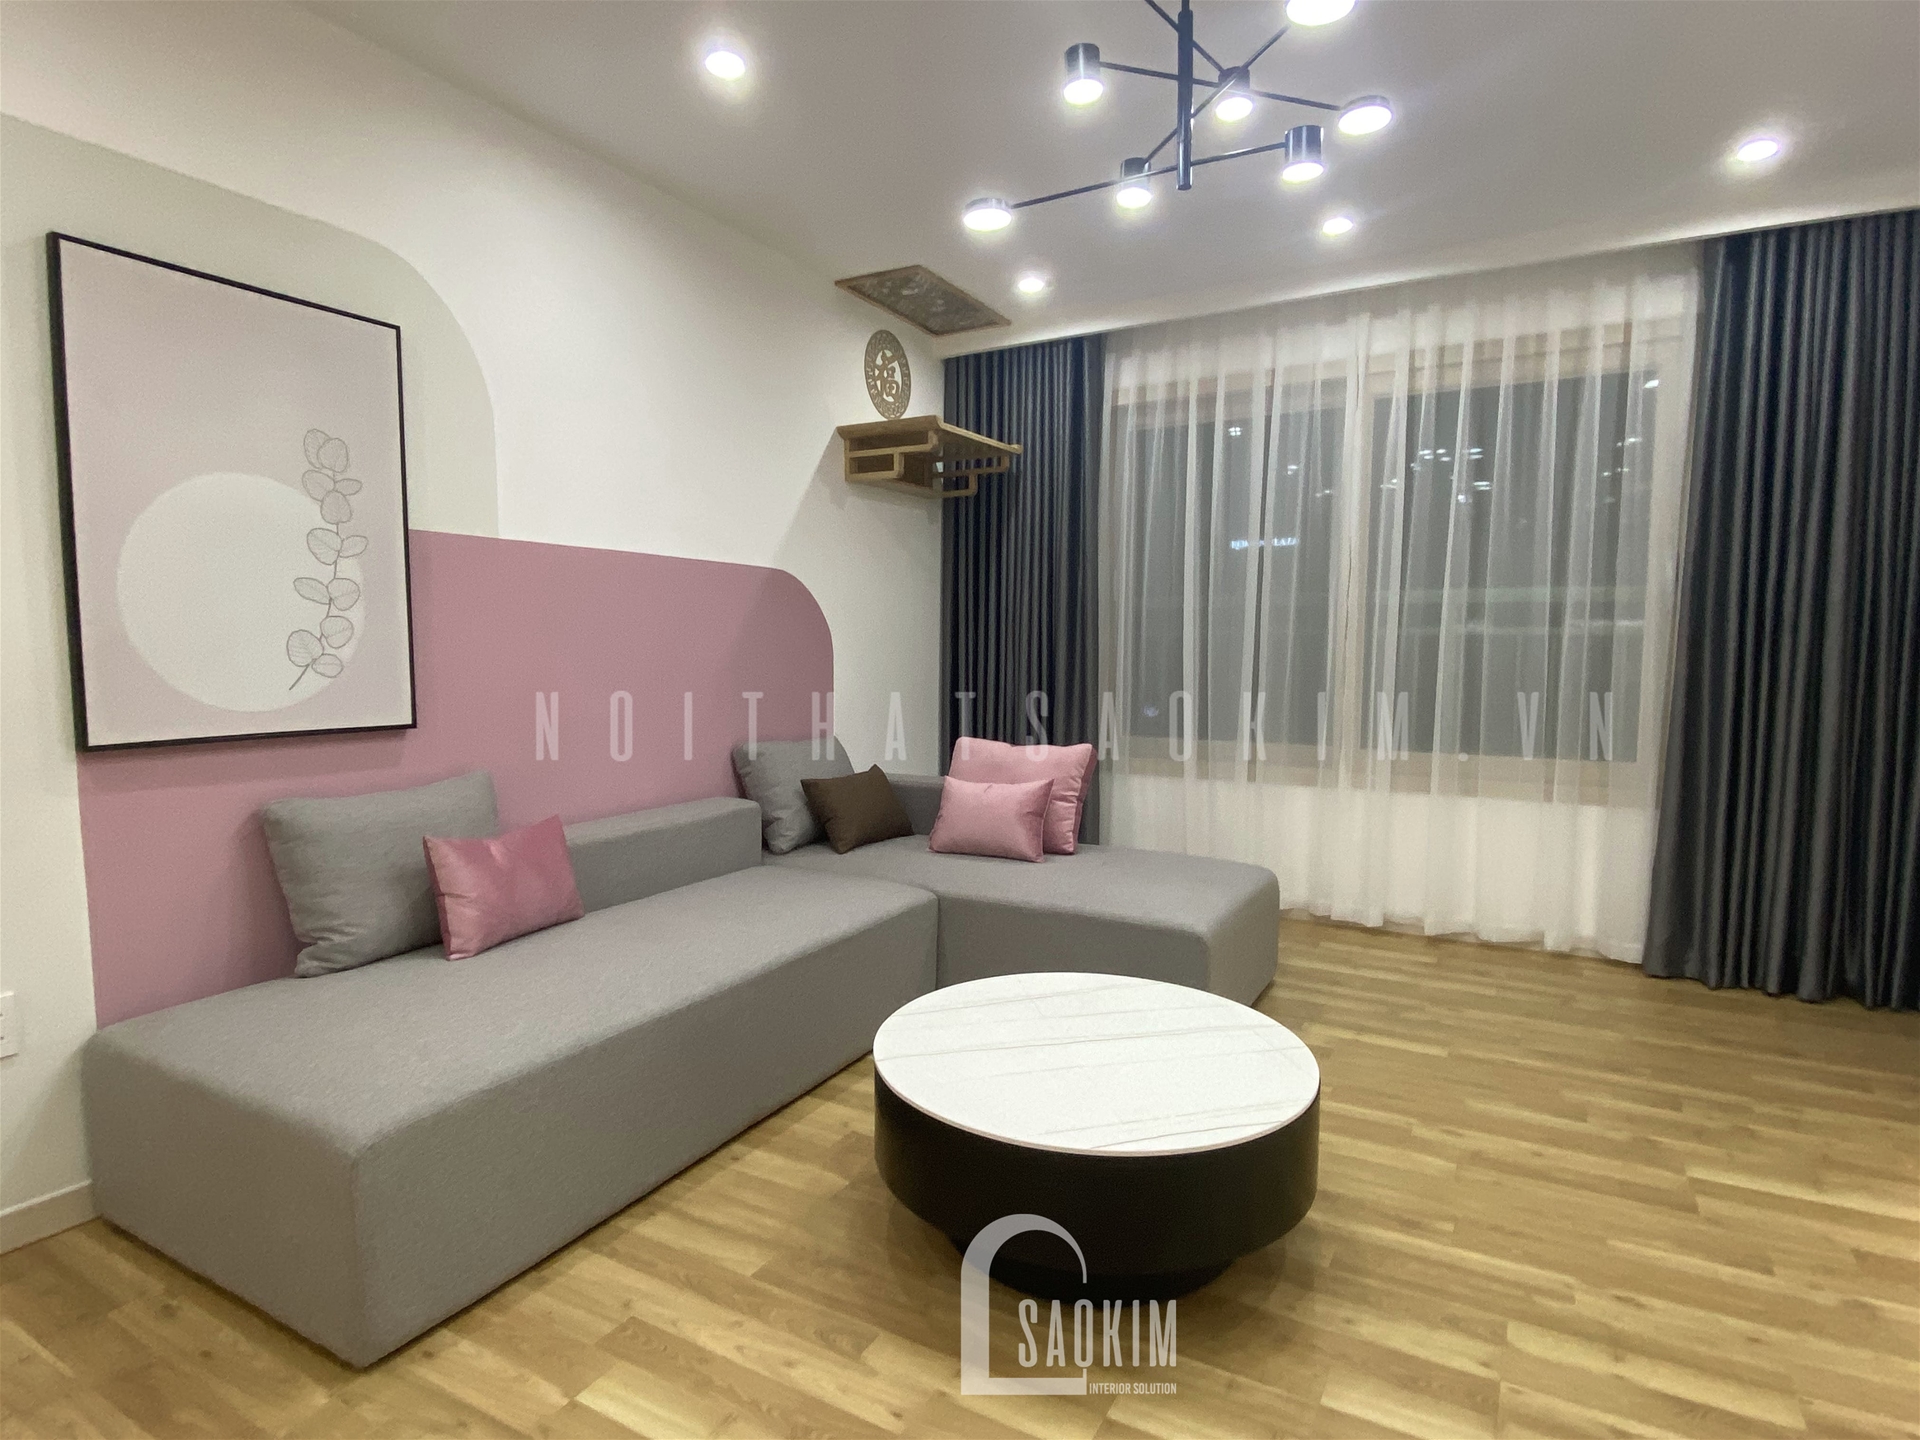 Thiết kế thi công nội thất trọn gói chung cư 3 phòng ngủ Booyoung